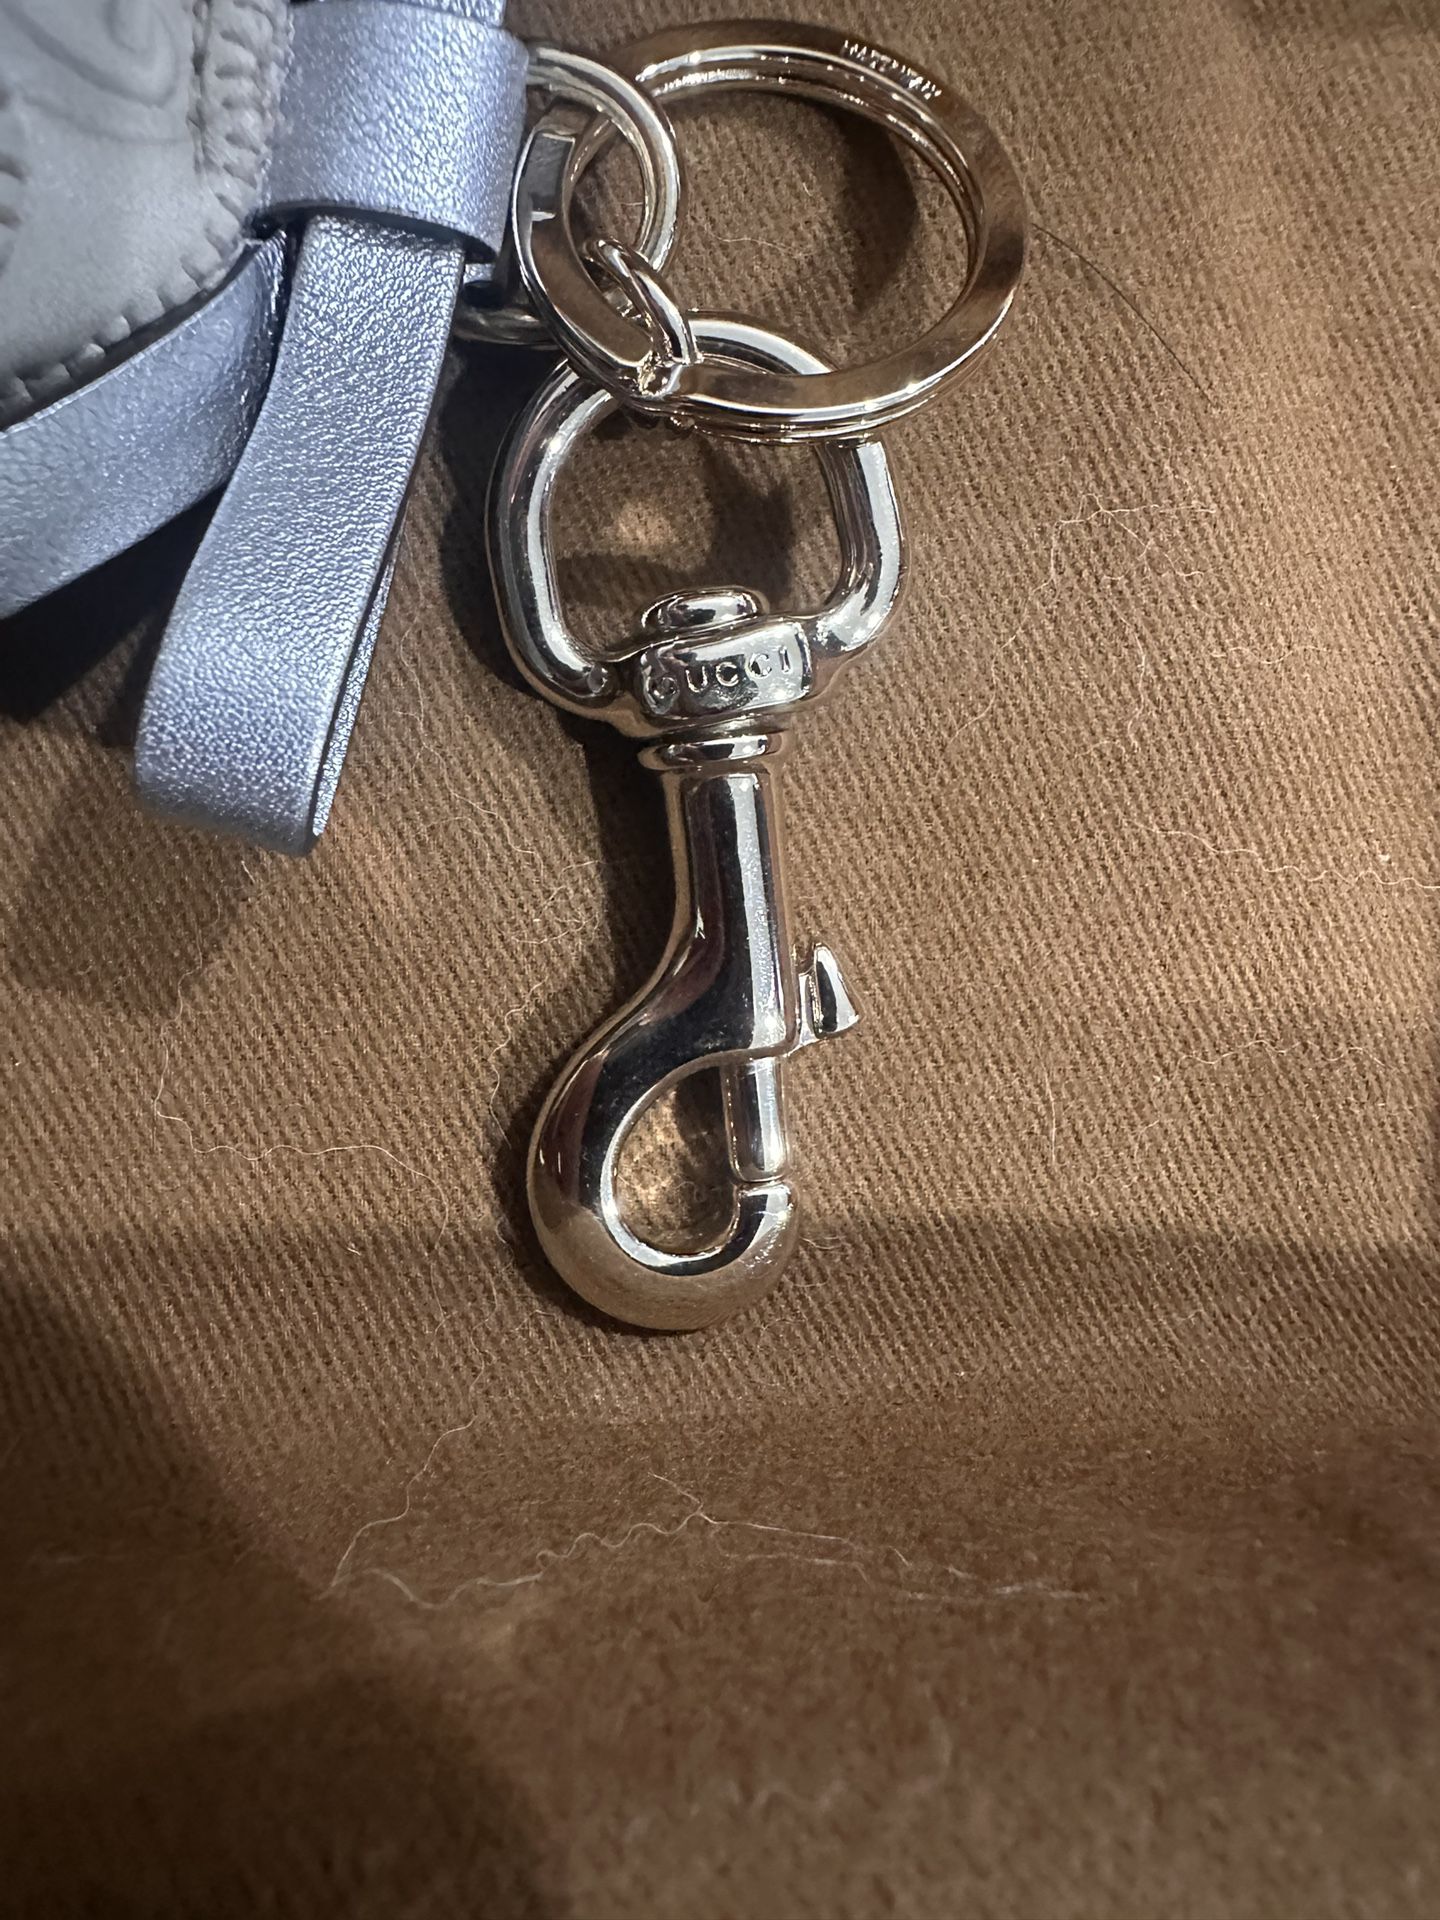 GUCCI Guccioli Beagle Sam Dog Bag Charm Keyring Key Chain for Sale in La  Mirada, CA - OfferUp